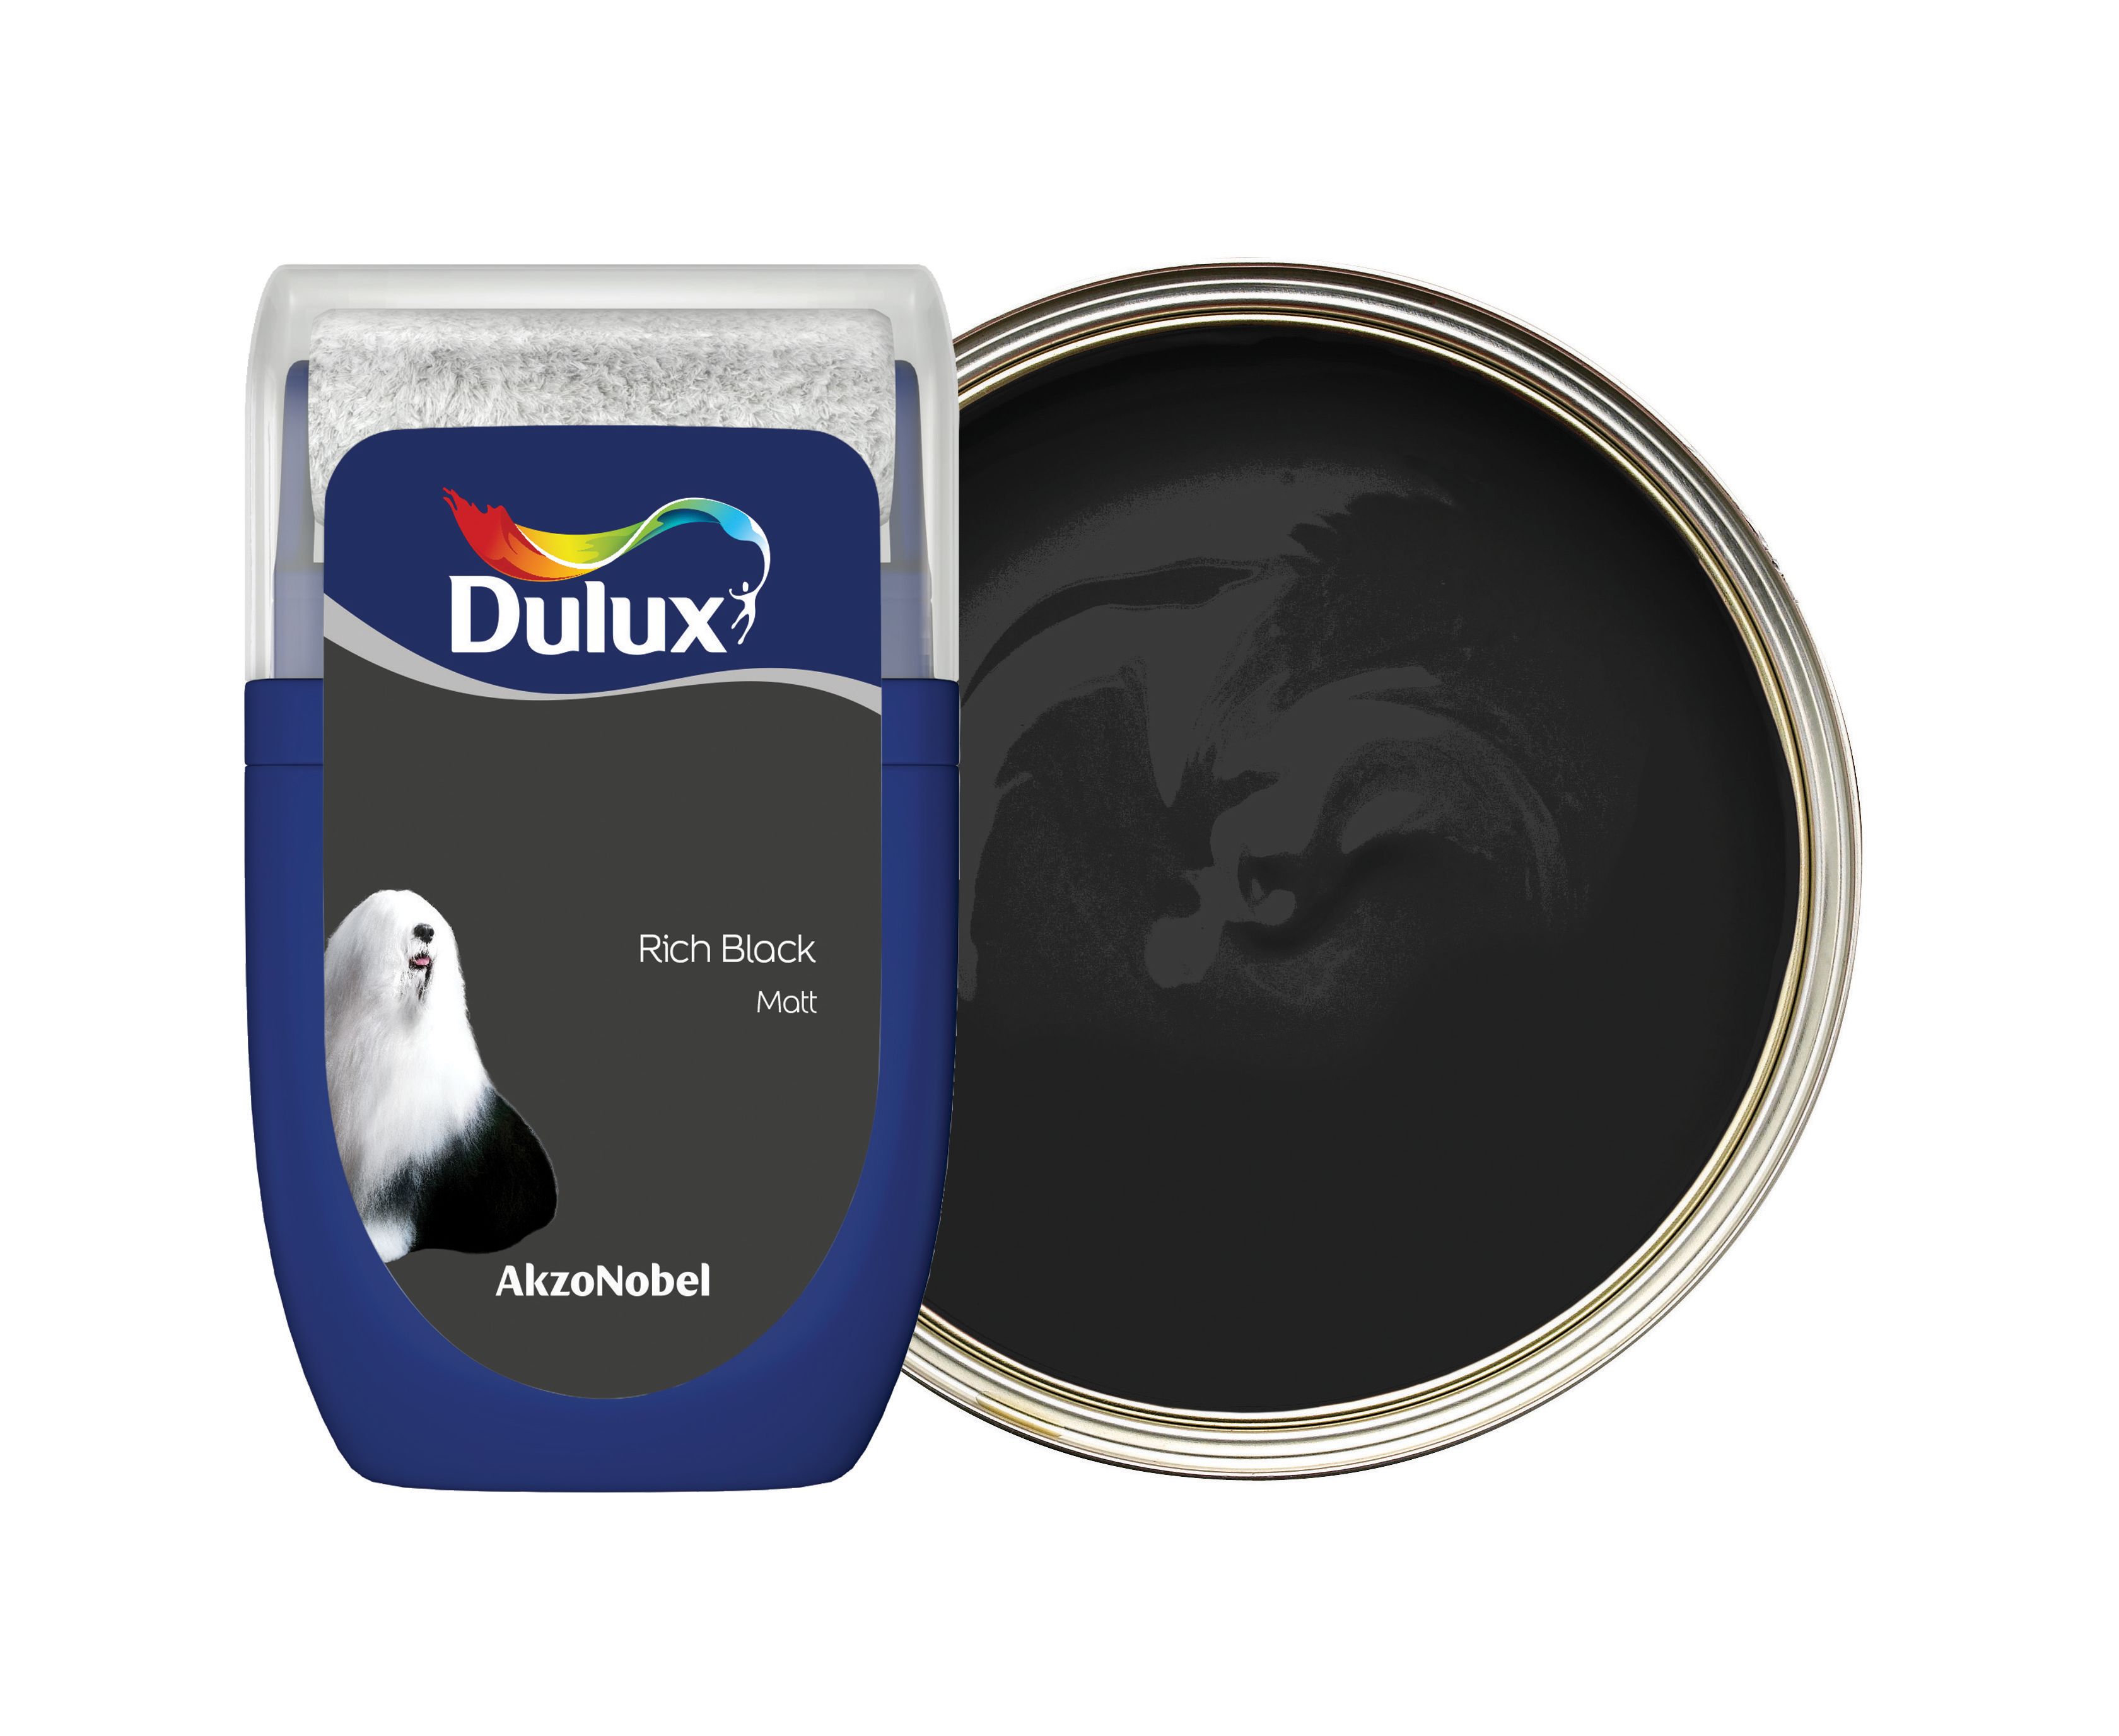 Image of Dulux Emulsion Paint - Rich Black Tester Pot - 30ml